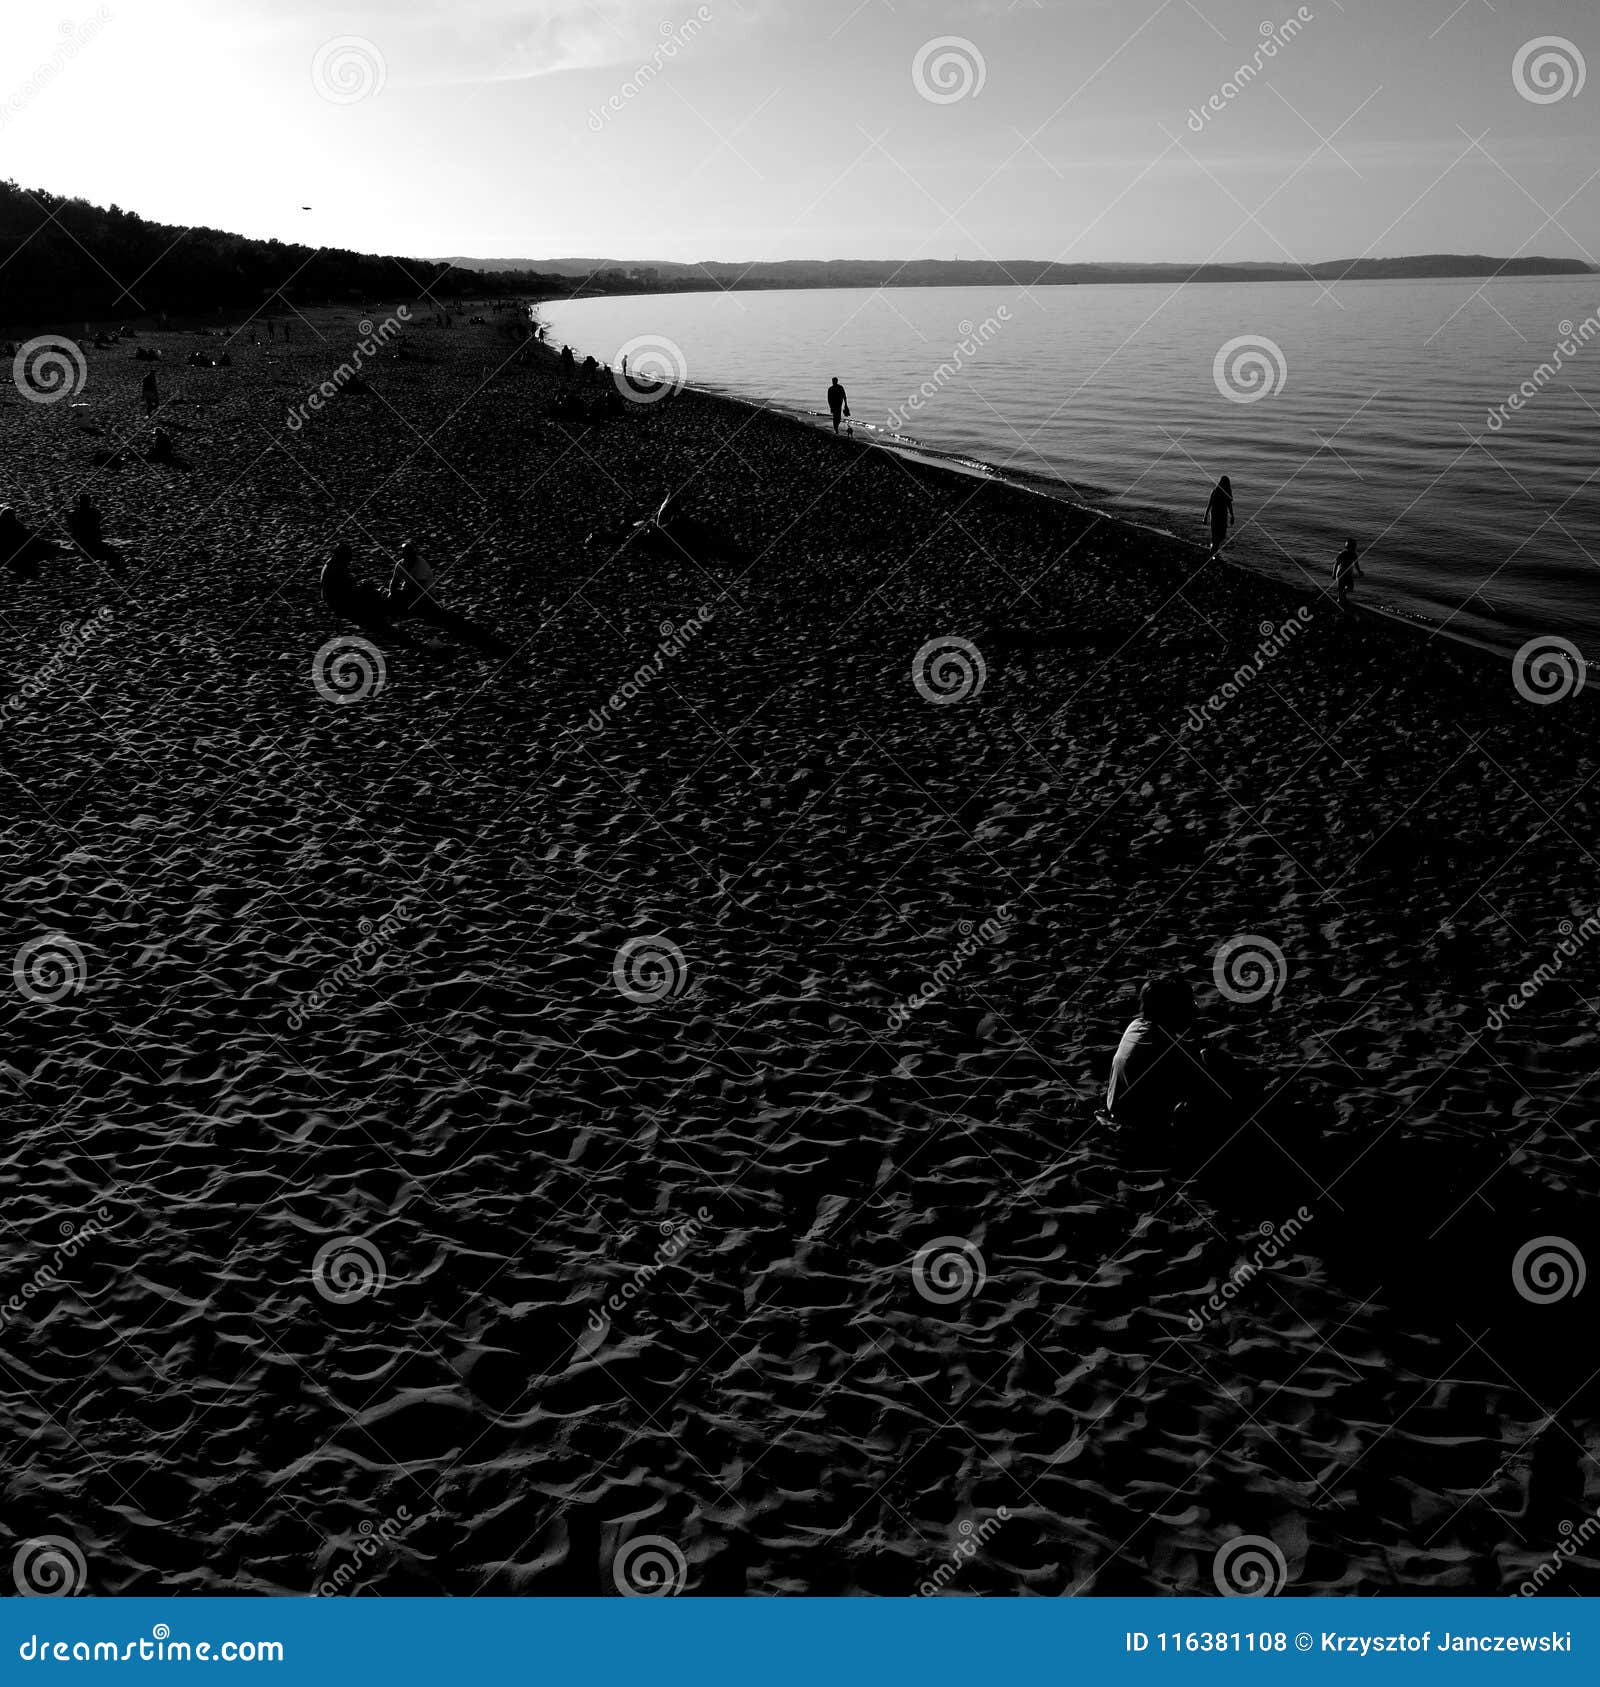 Sulla Spiaggia Sguardo Artistico In Bianco E Nero Fotografia Stock Immagine Di Artistico Bianco